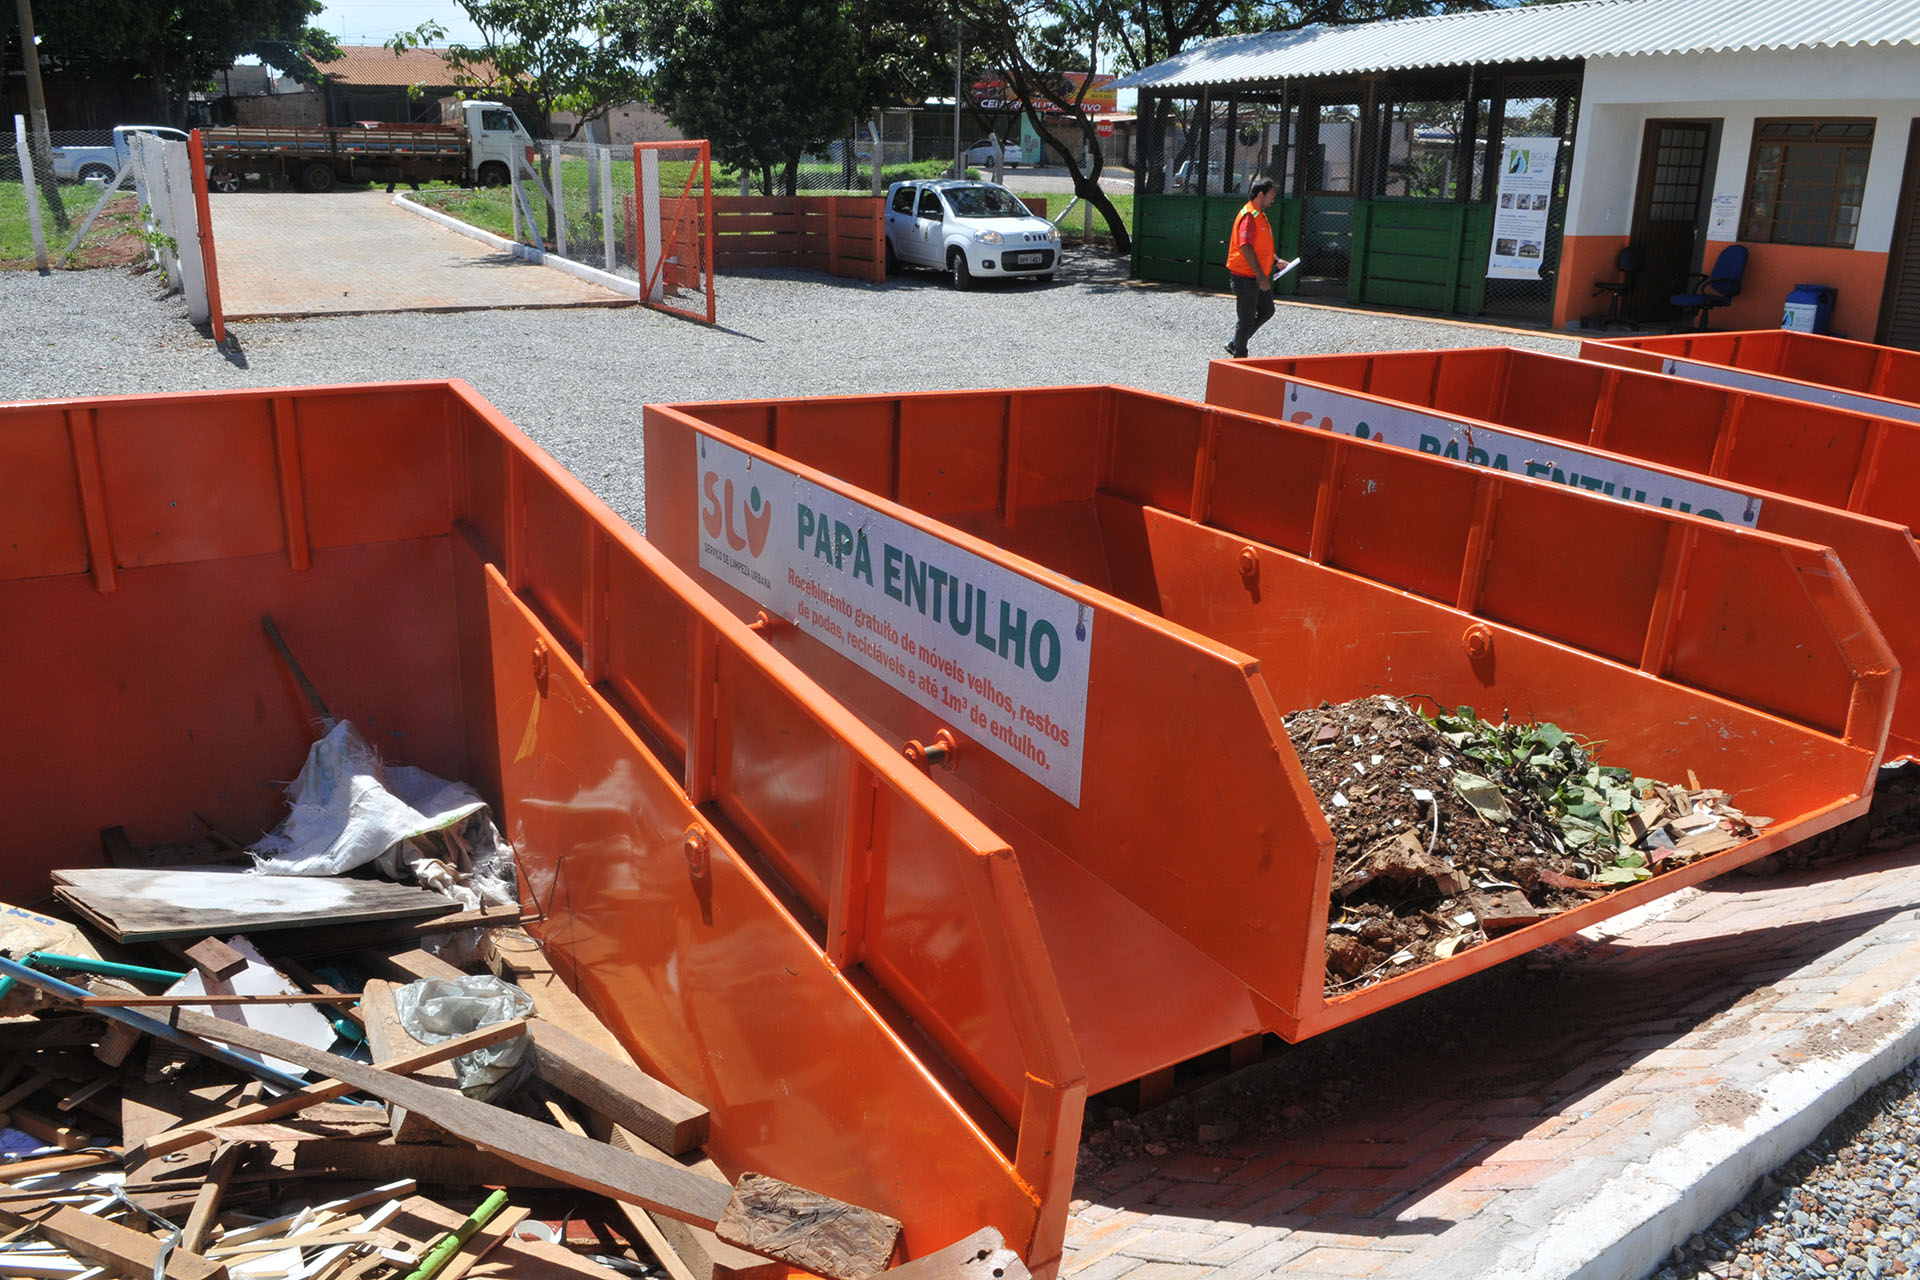 O papa-entulho em Ceilândia recebe entulho de construção civil, restos de poda, materiais recicláveis, colchões e móveis, entre outros materiais